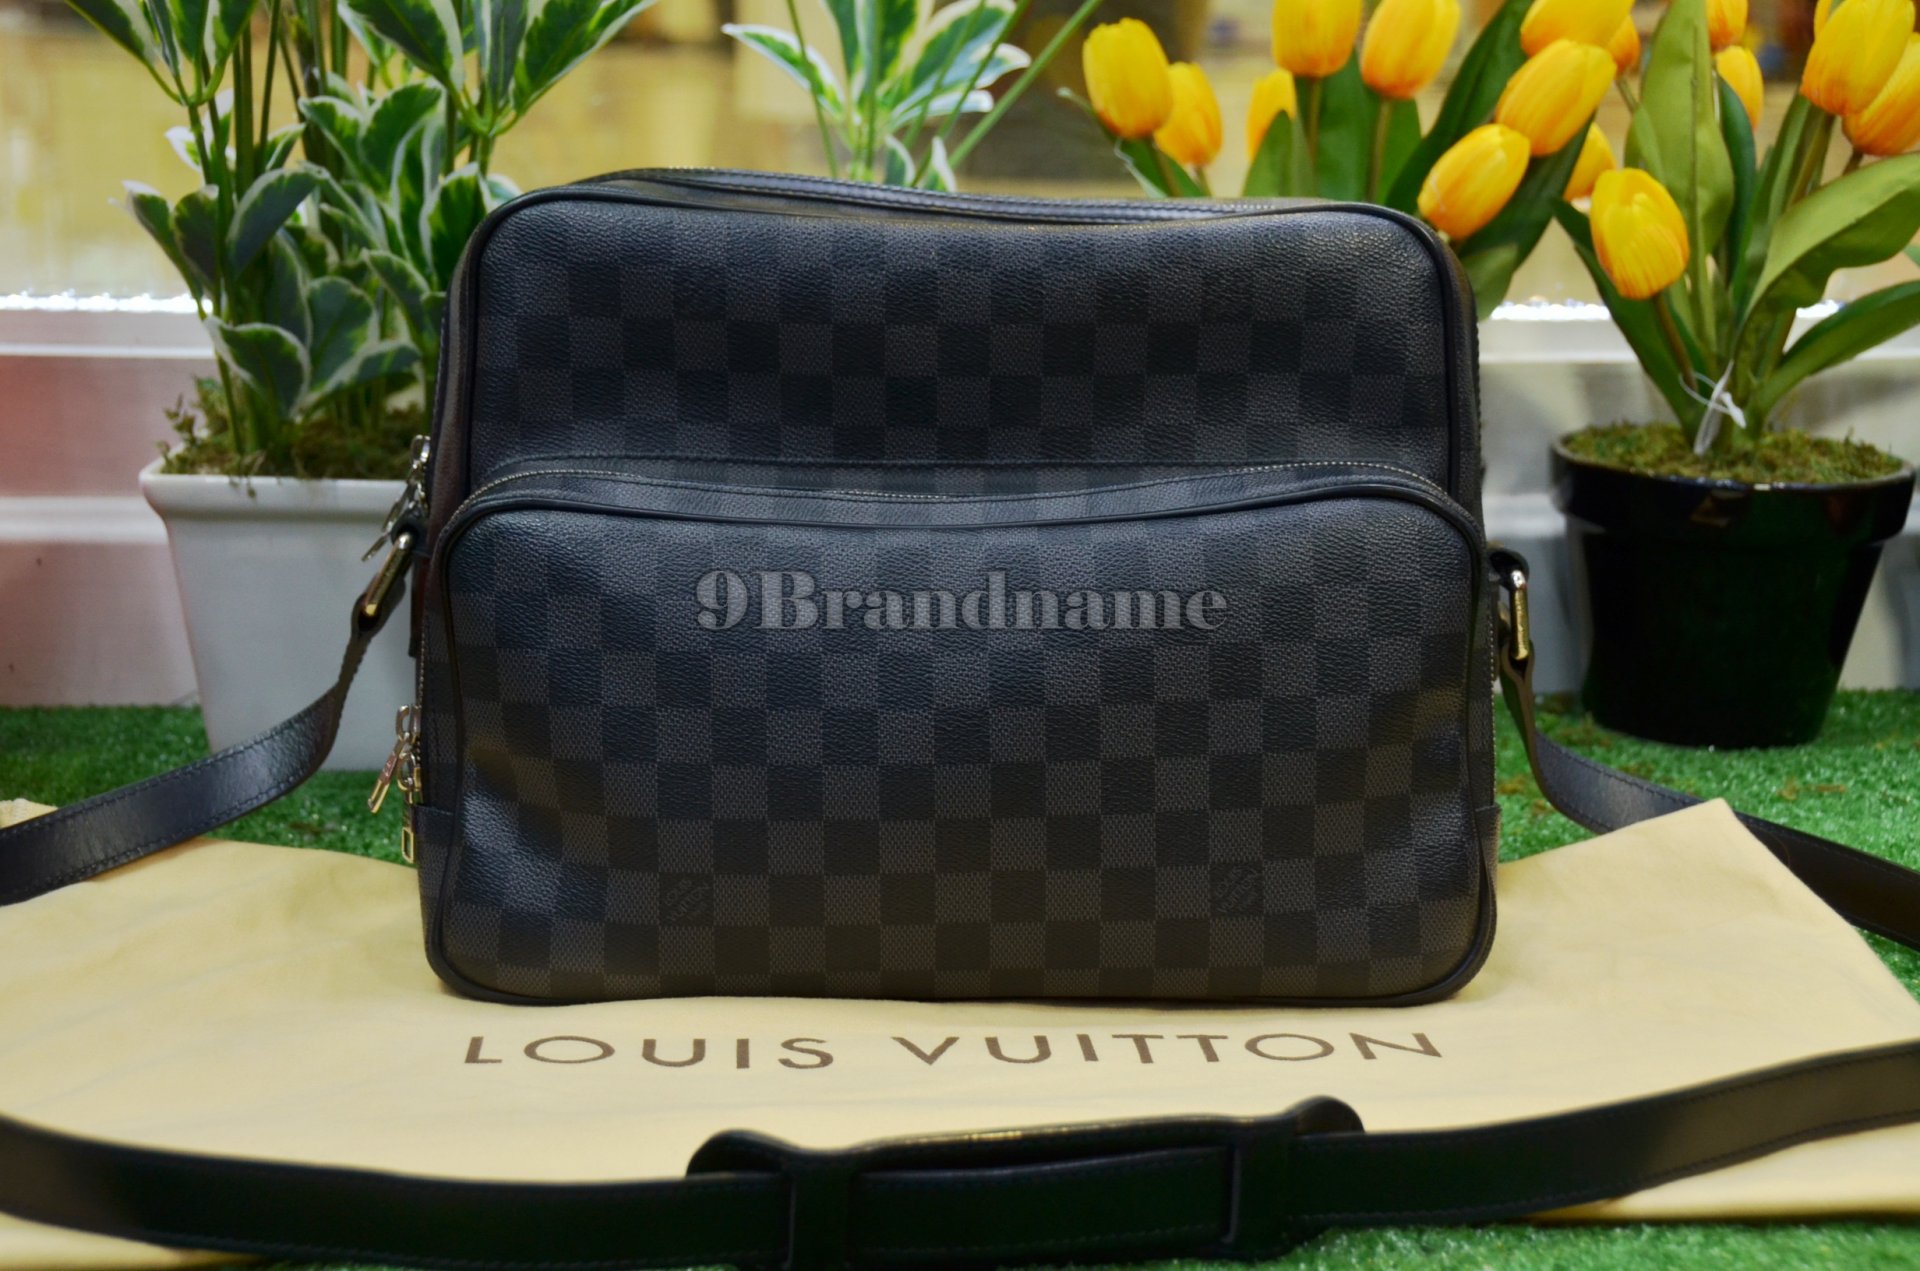 Louis Vuitton Leoh Gaphite - Used Authentic Bag